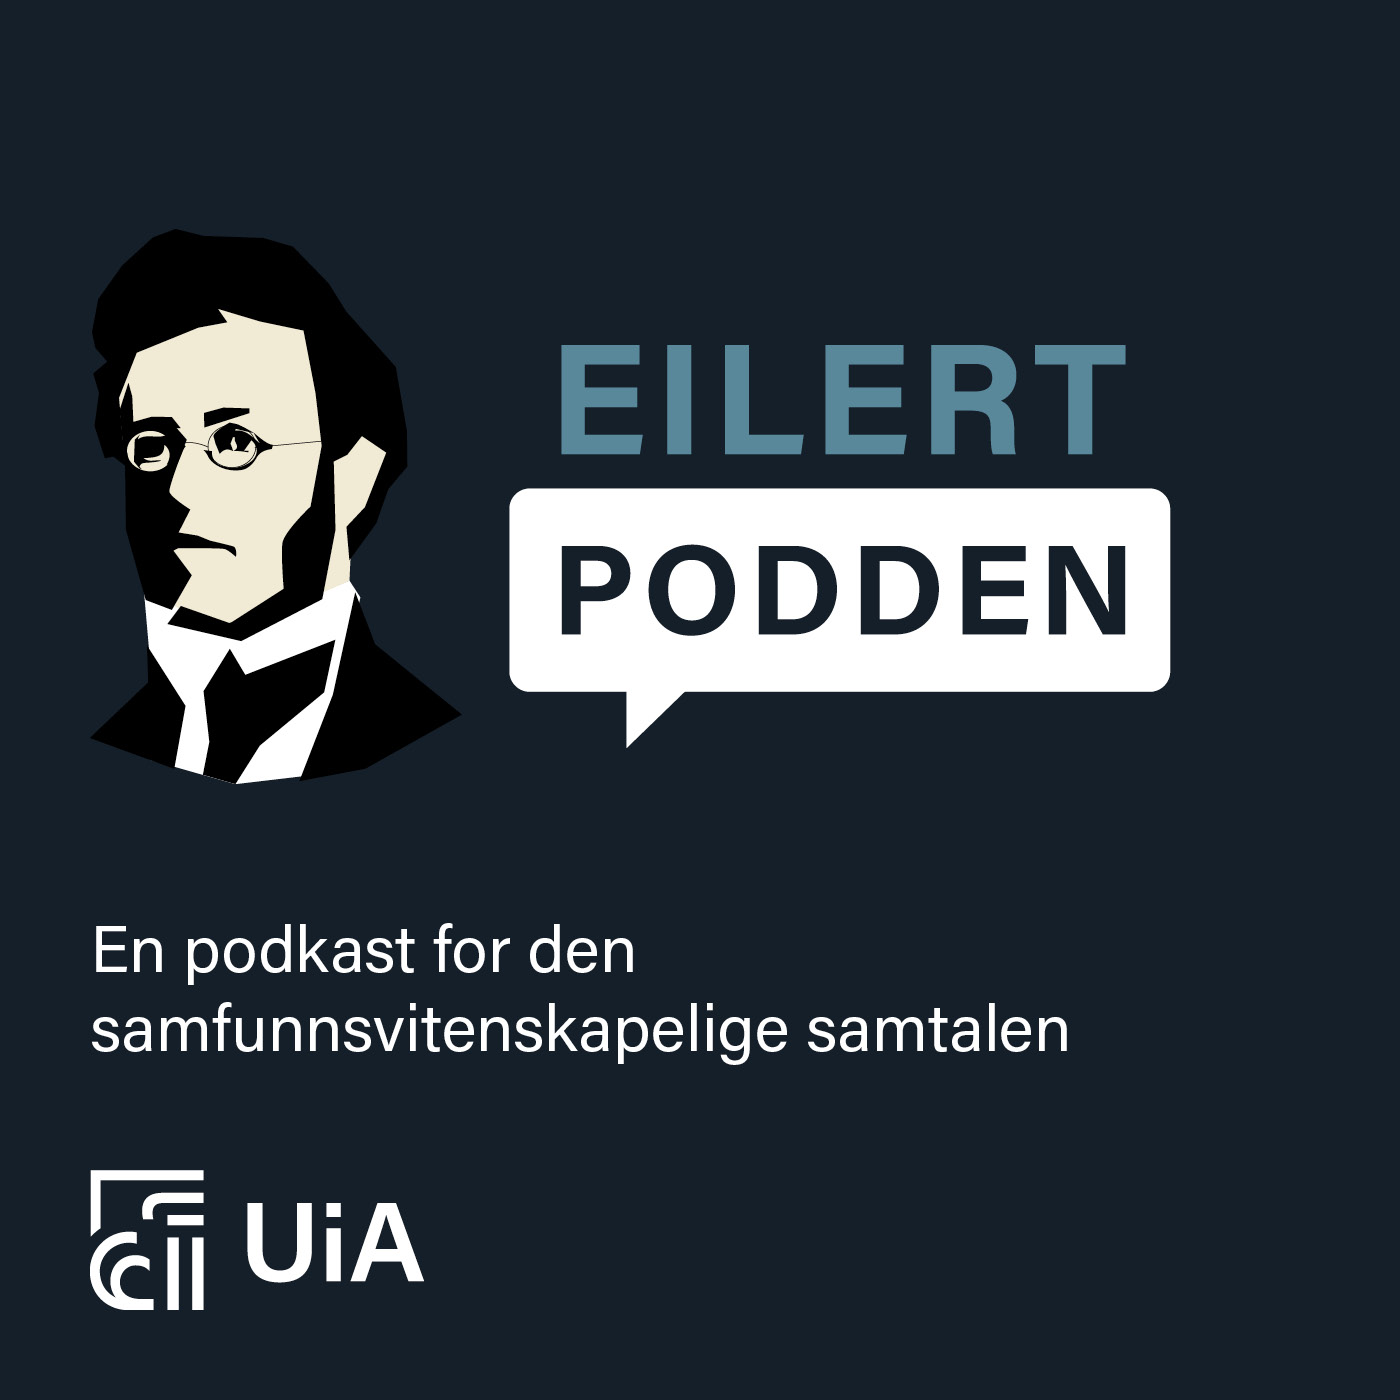 Artwork for podcast Eilertpodden